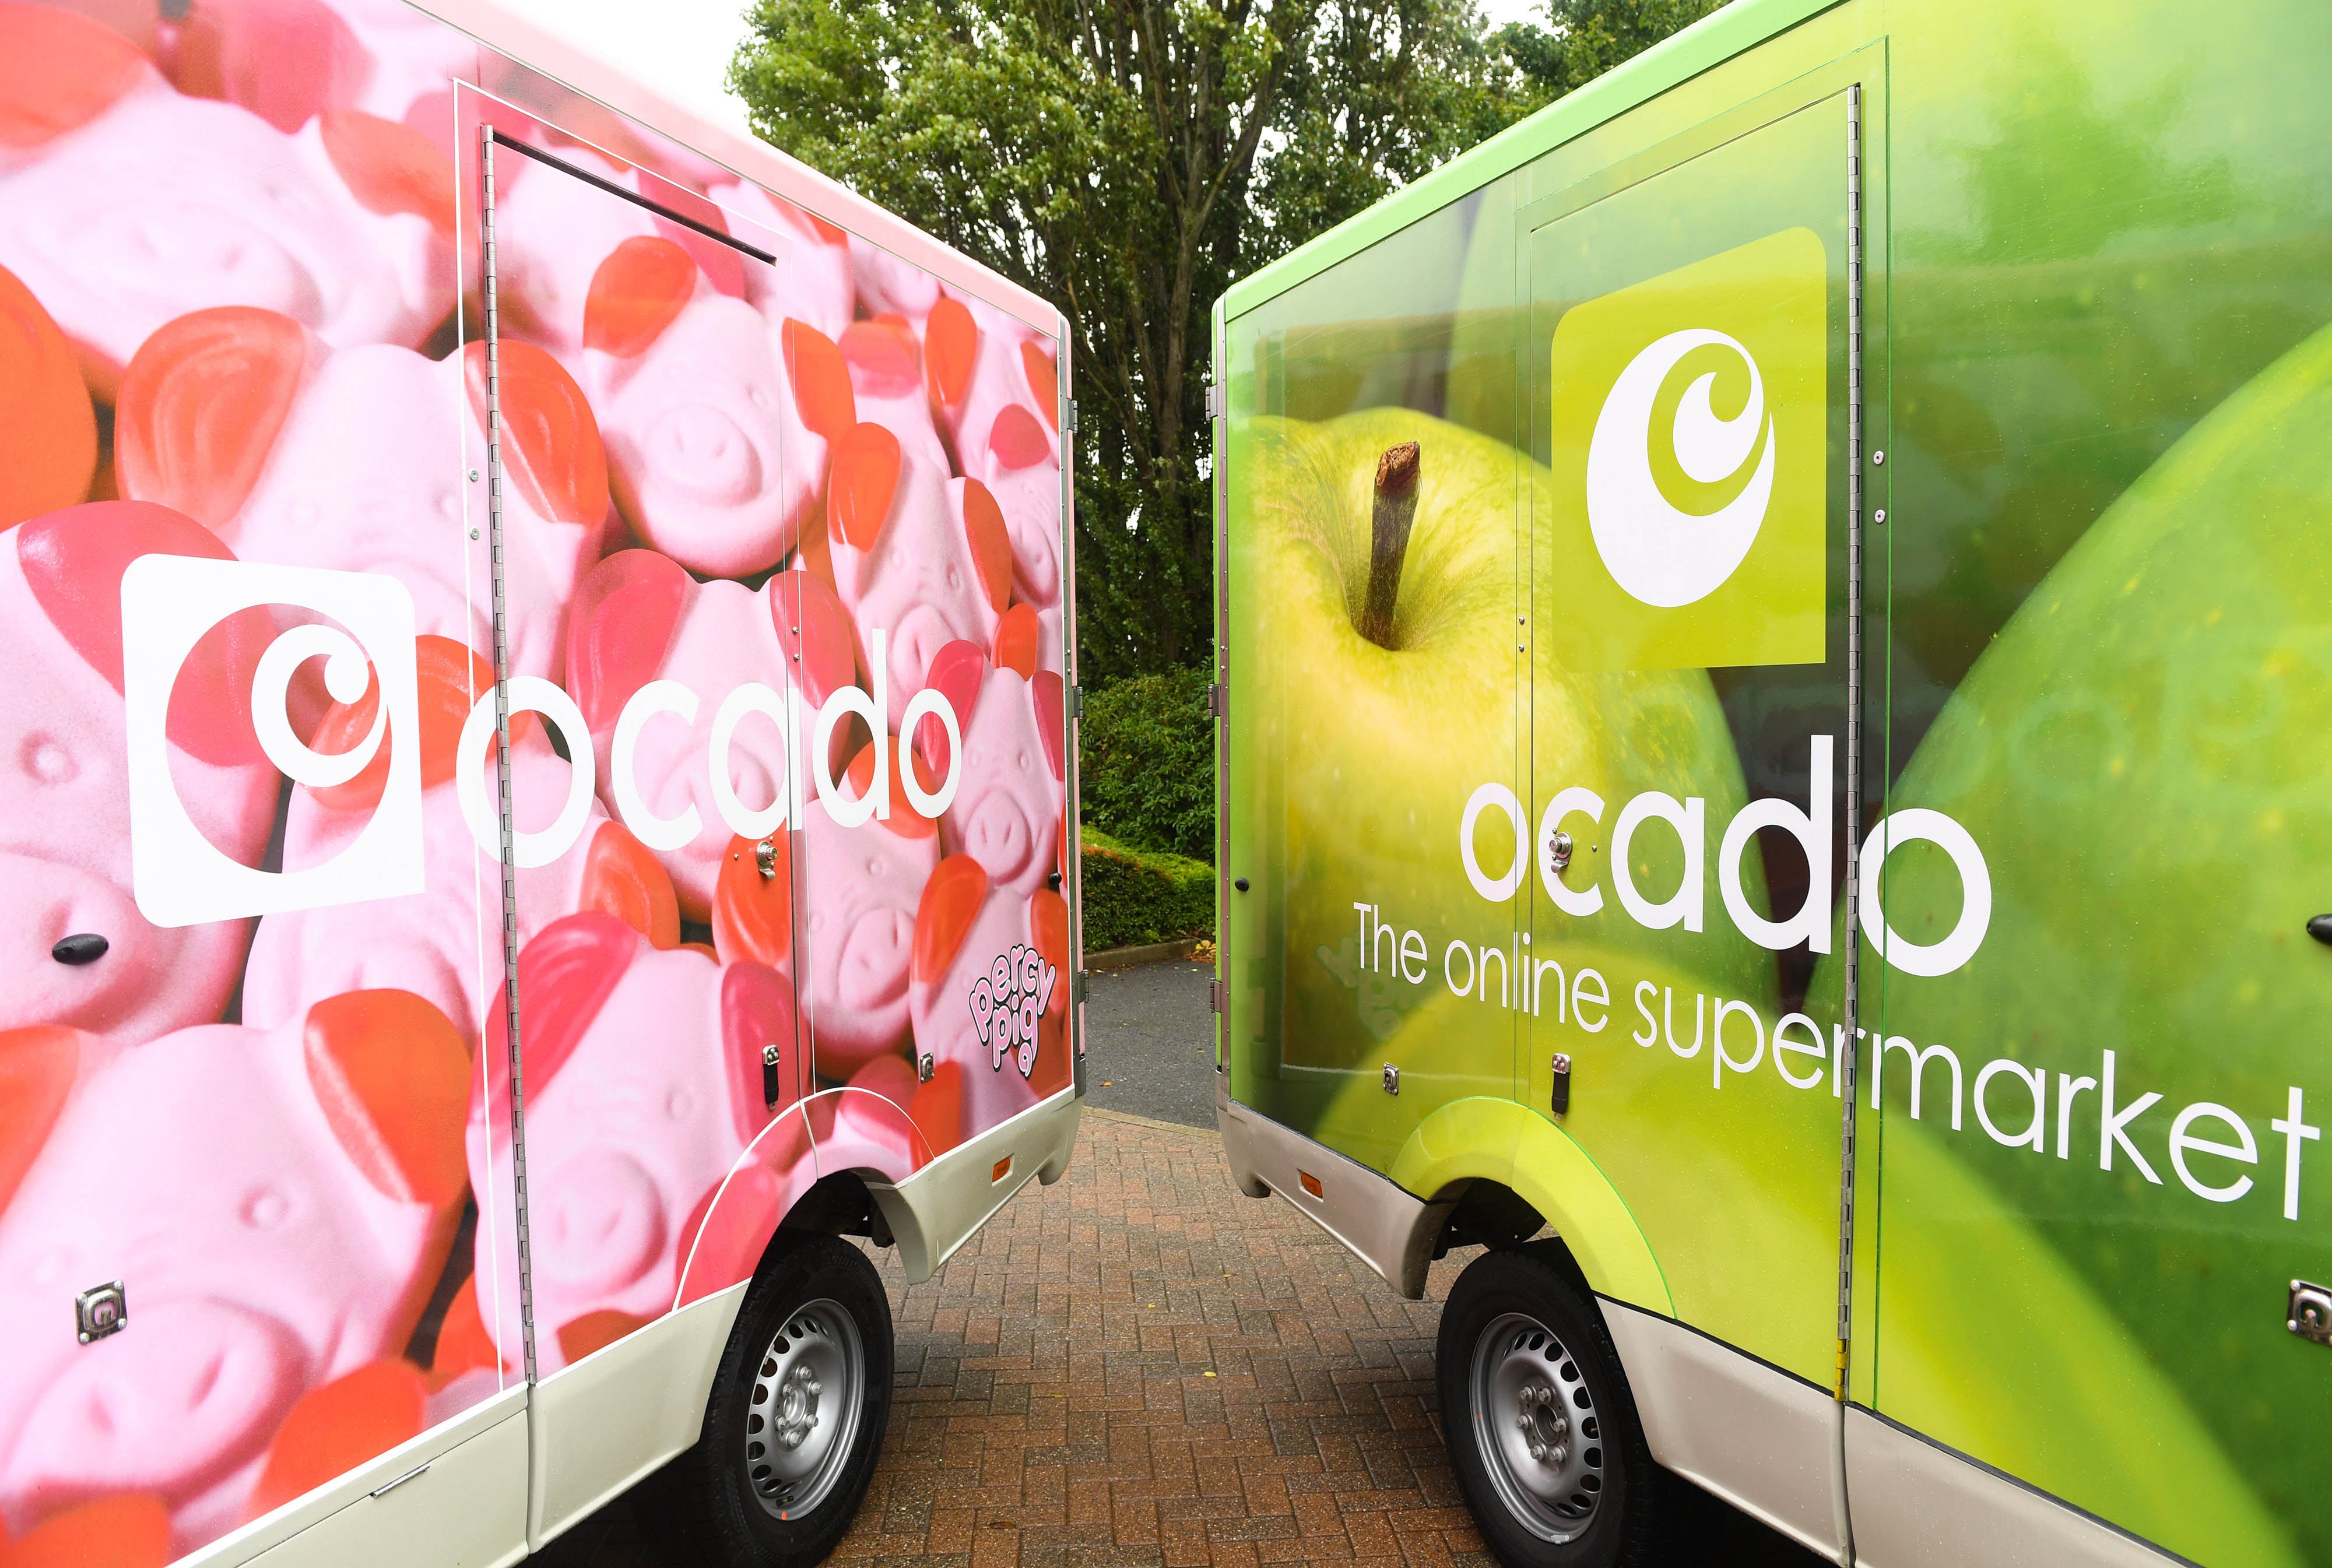 A fleet of Ocado delivery vans